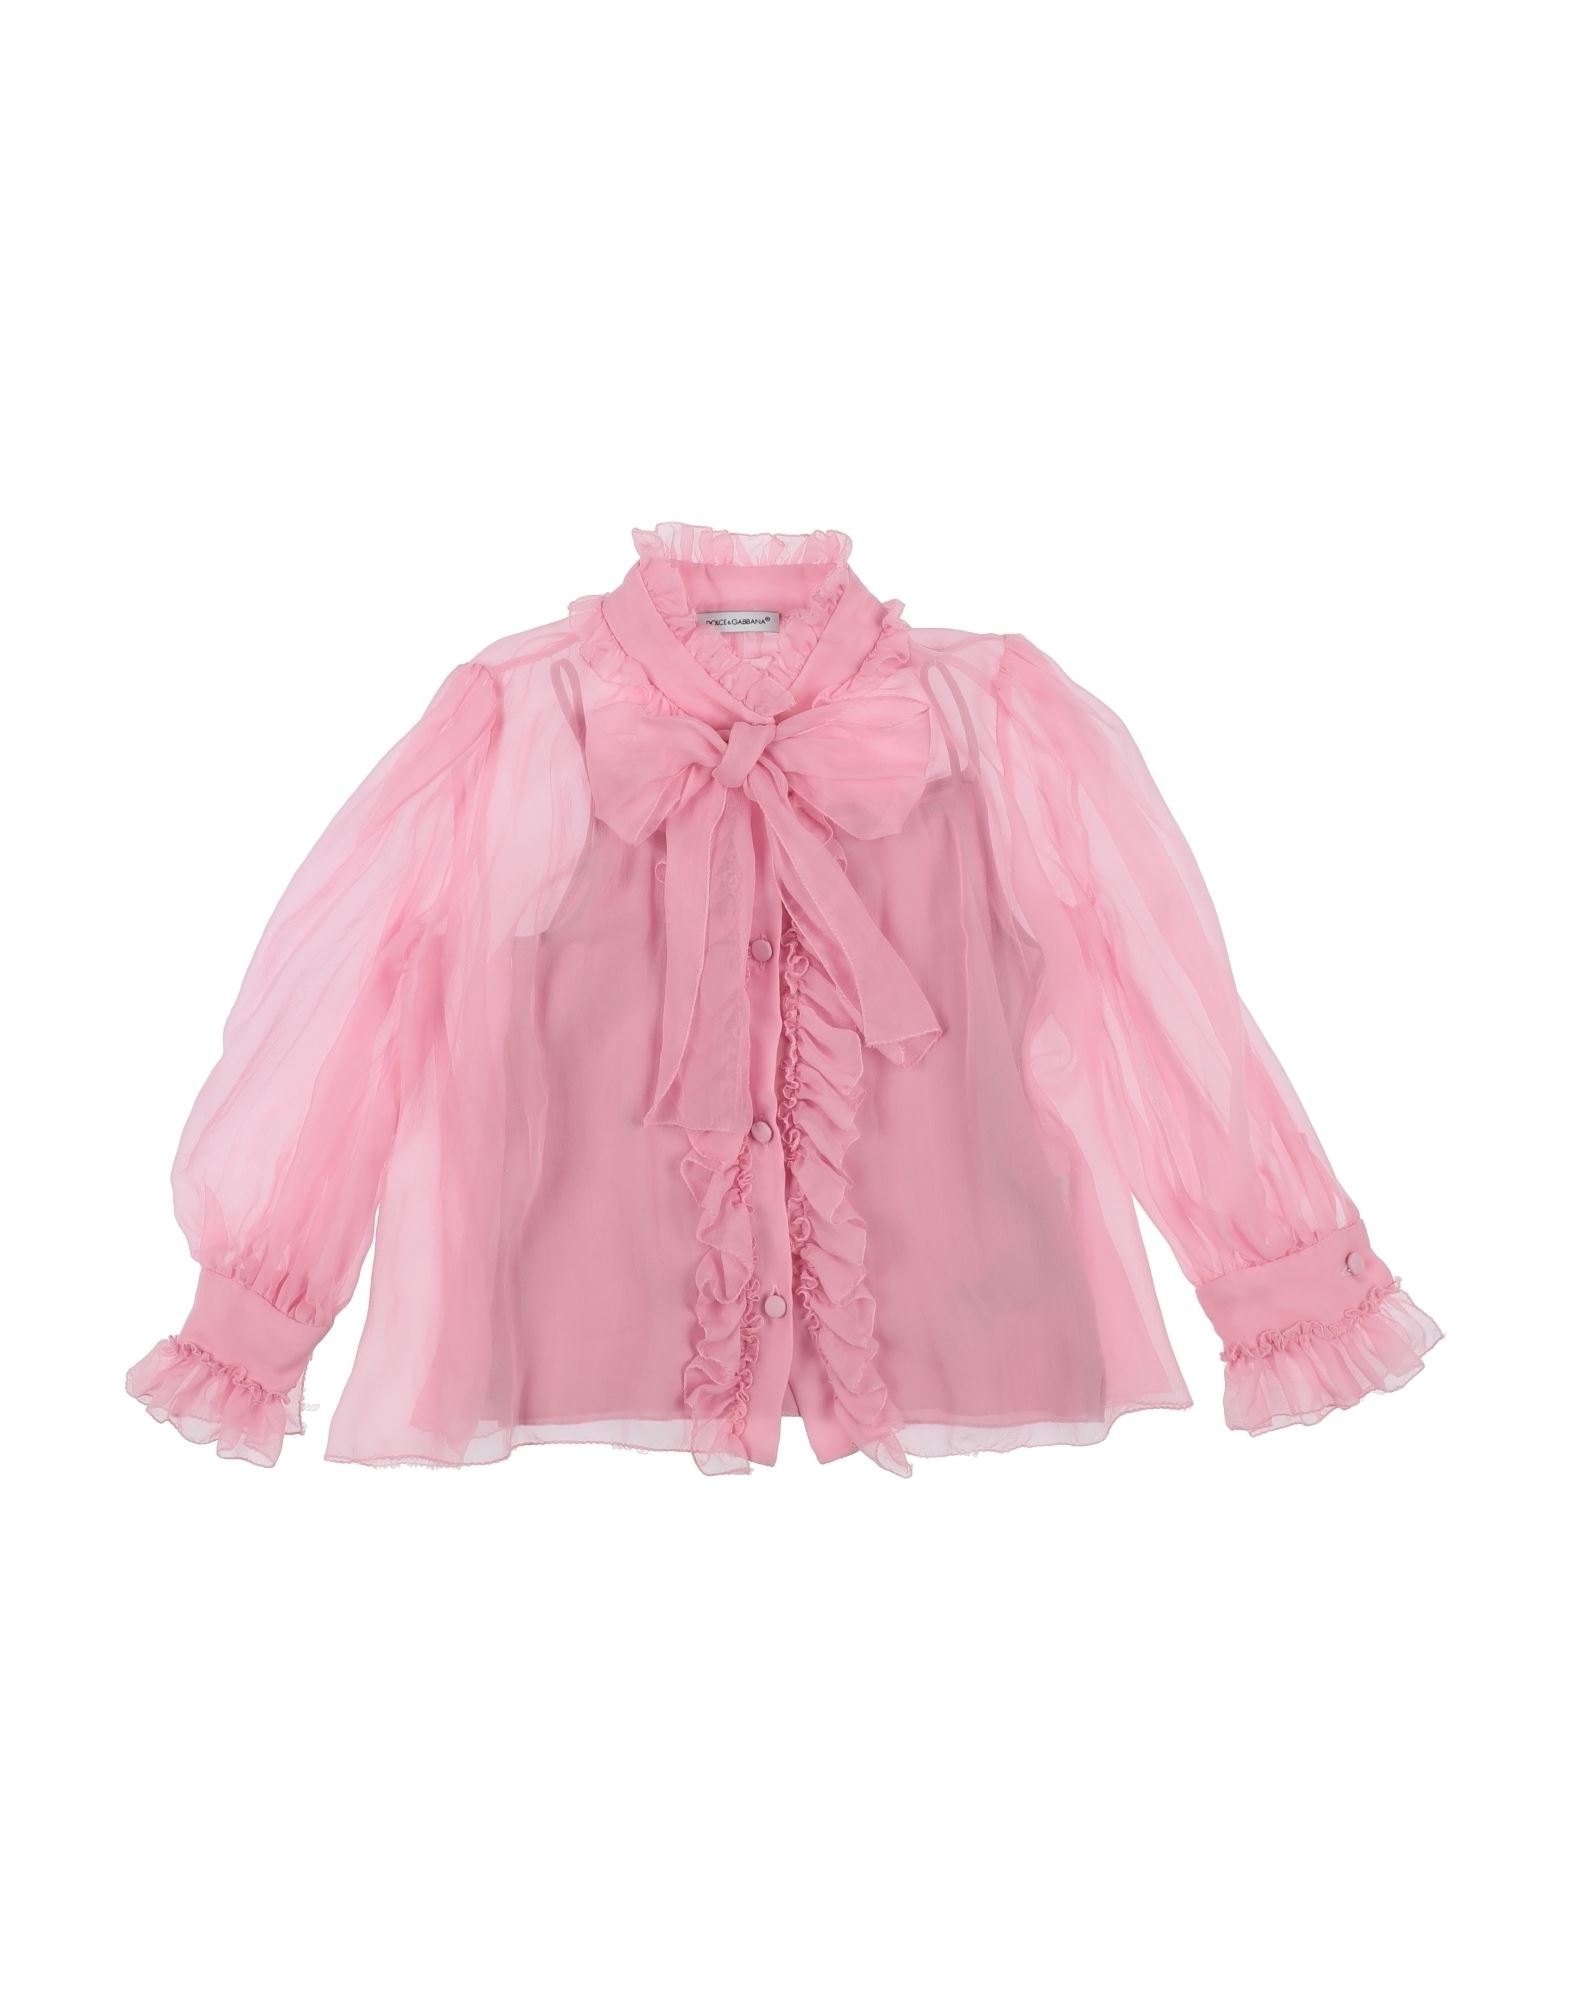 Dolce & Gabbana Kids'  Toddler Girl Shirt Pink Size 6 Silk